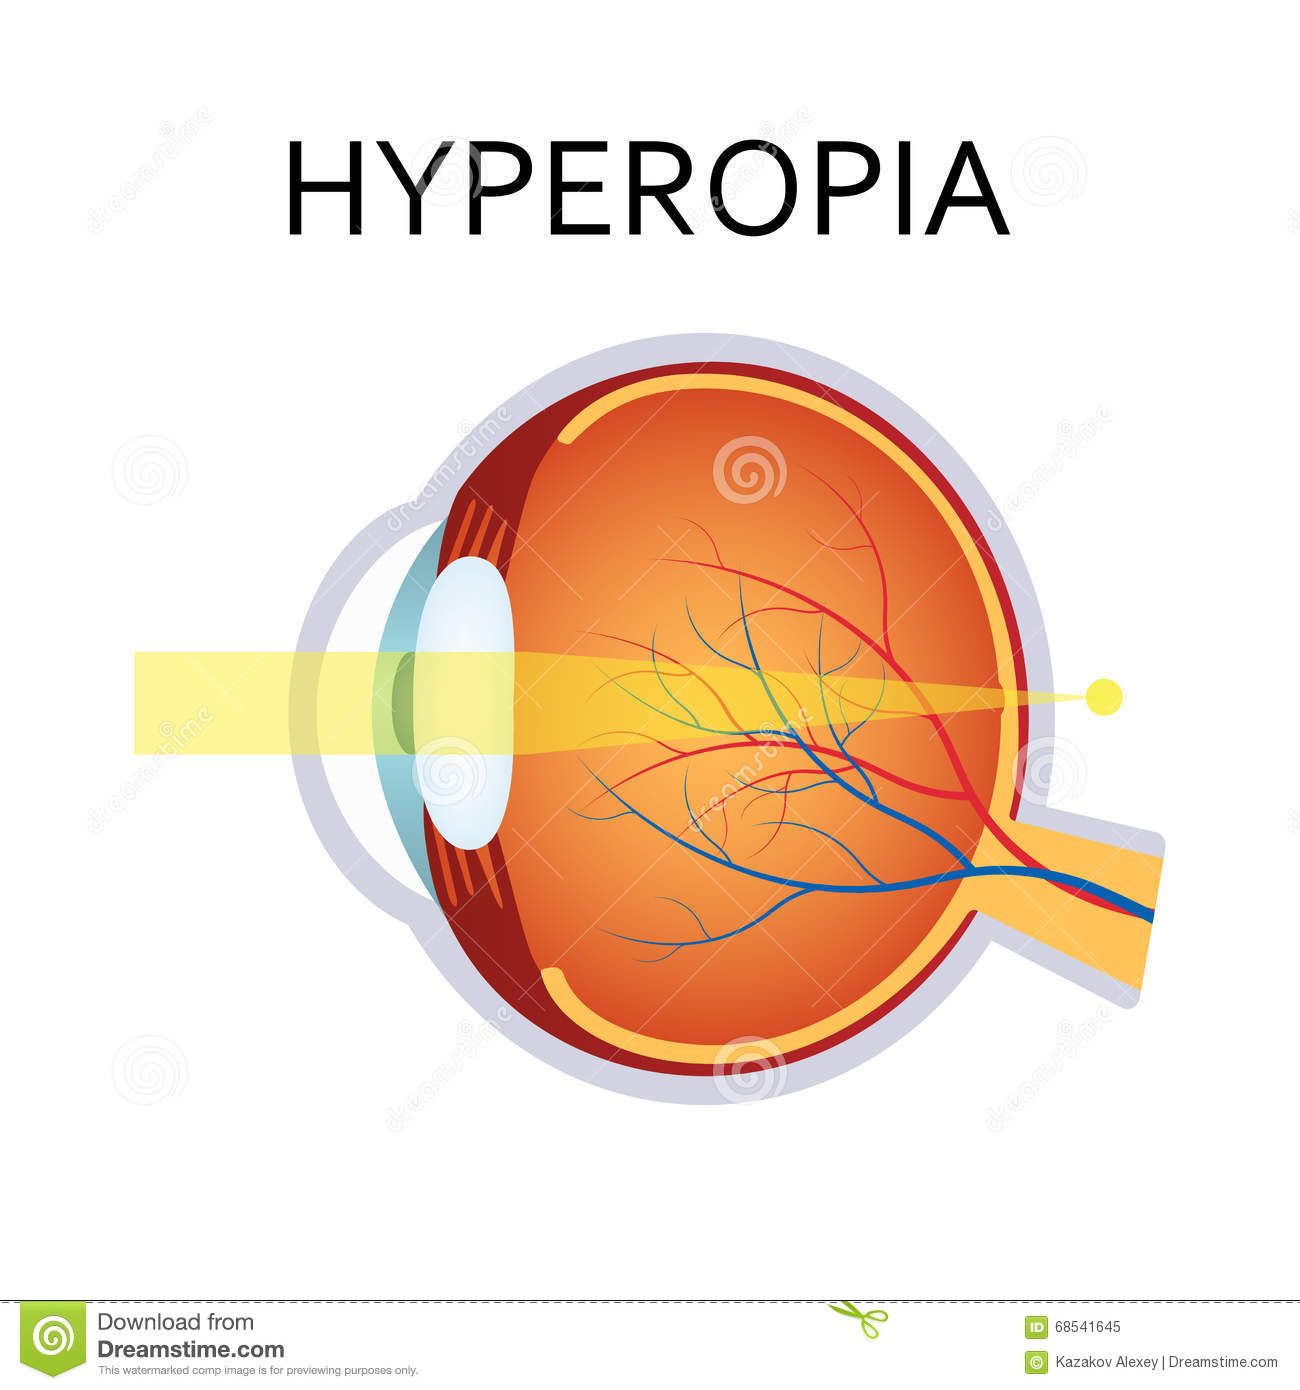 Farsightedness (hyperopia)